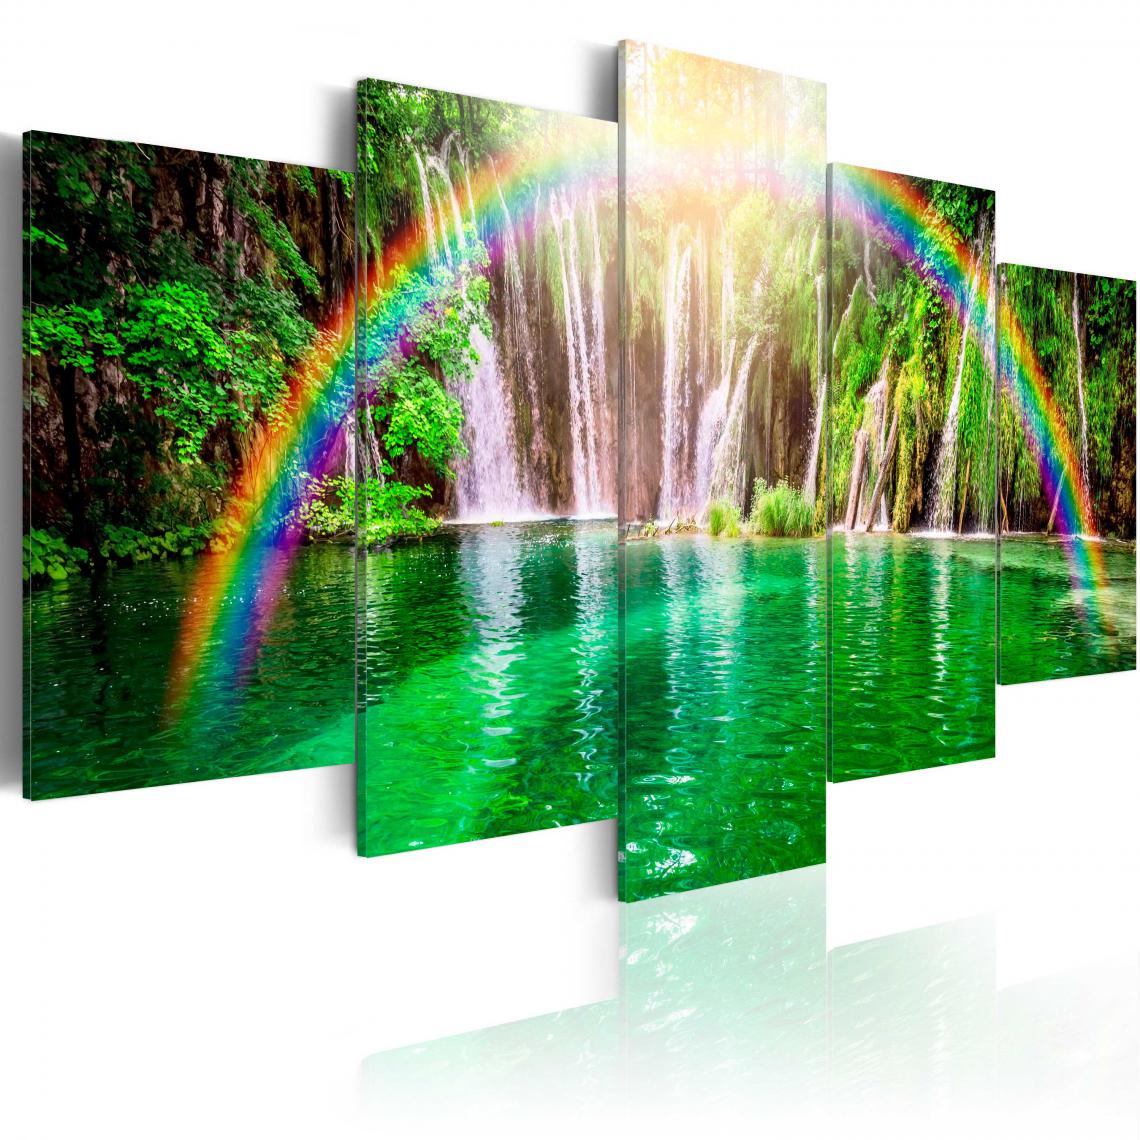 Decoshop26 - Tableau sur toile en 5 panneaux décoration murale image imprimée cadre en bois à suspendre Rainbow time II 100x50 cm 11_0009894 - Tableaux, peintures